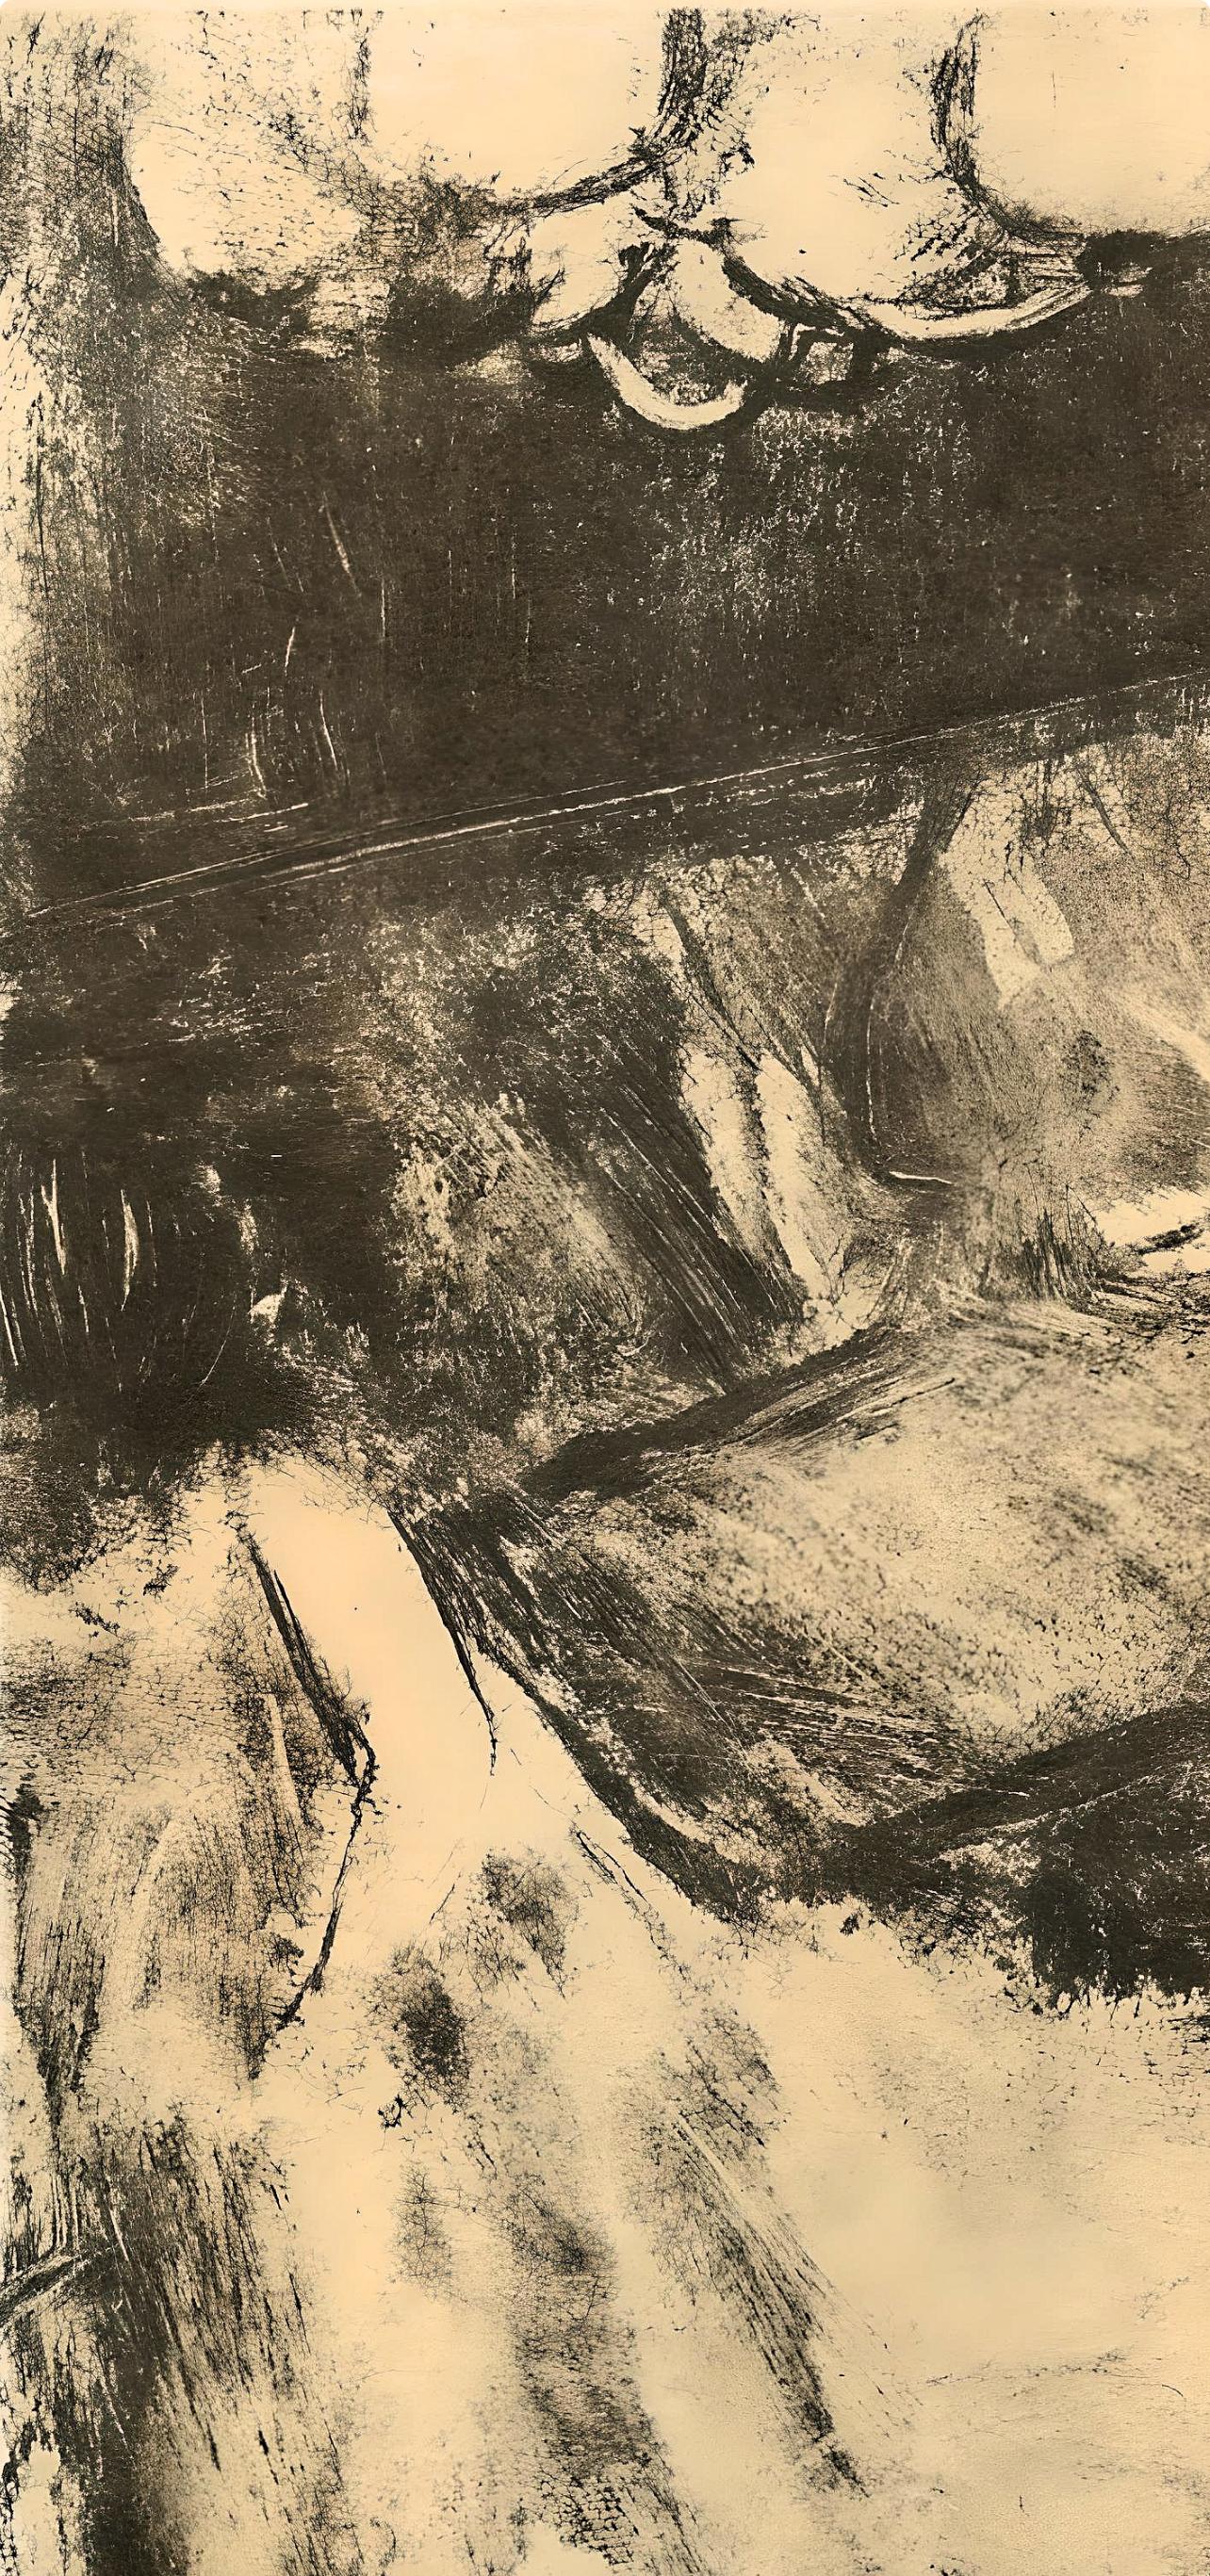 Degas, Le Divan, Les Monotypes (after) - Print by Edgar Degas